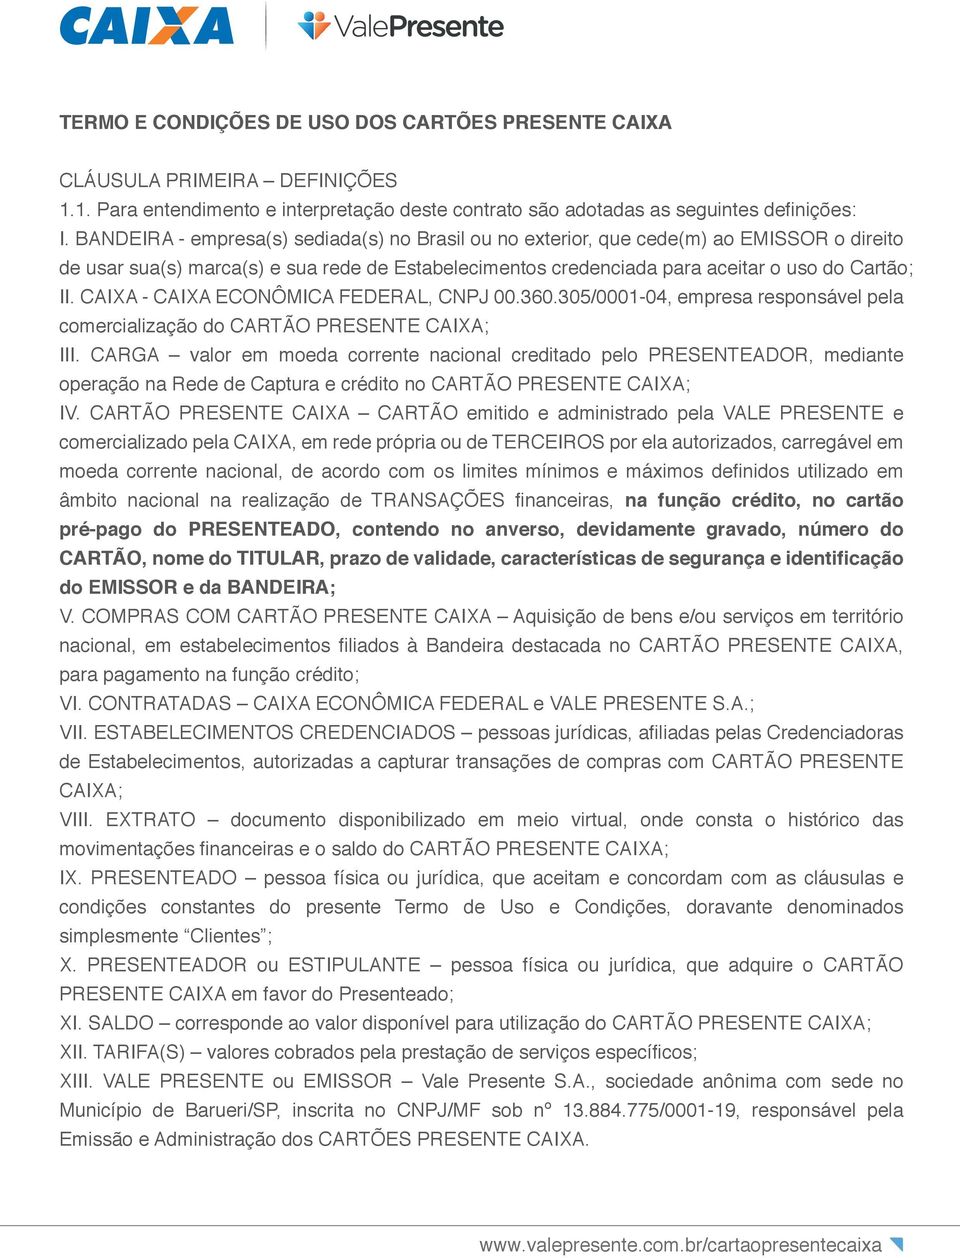 CAIXA - CAIXA ECONÔMICA FEDERAL, CNPJ 00.360.305/0001-04, empresa responsável pela comercialização do CARTÃO PRESENTE CAIXA; III.